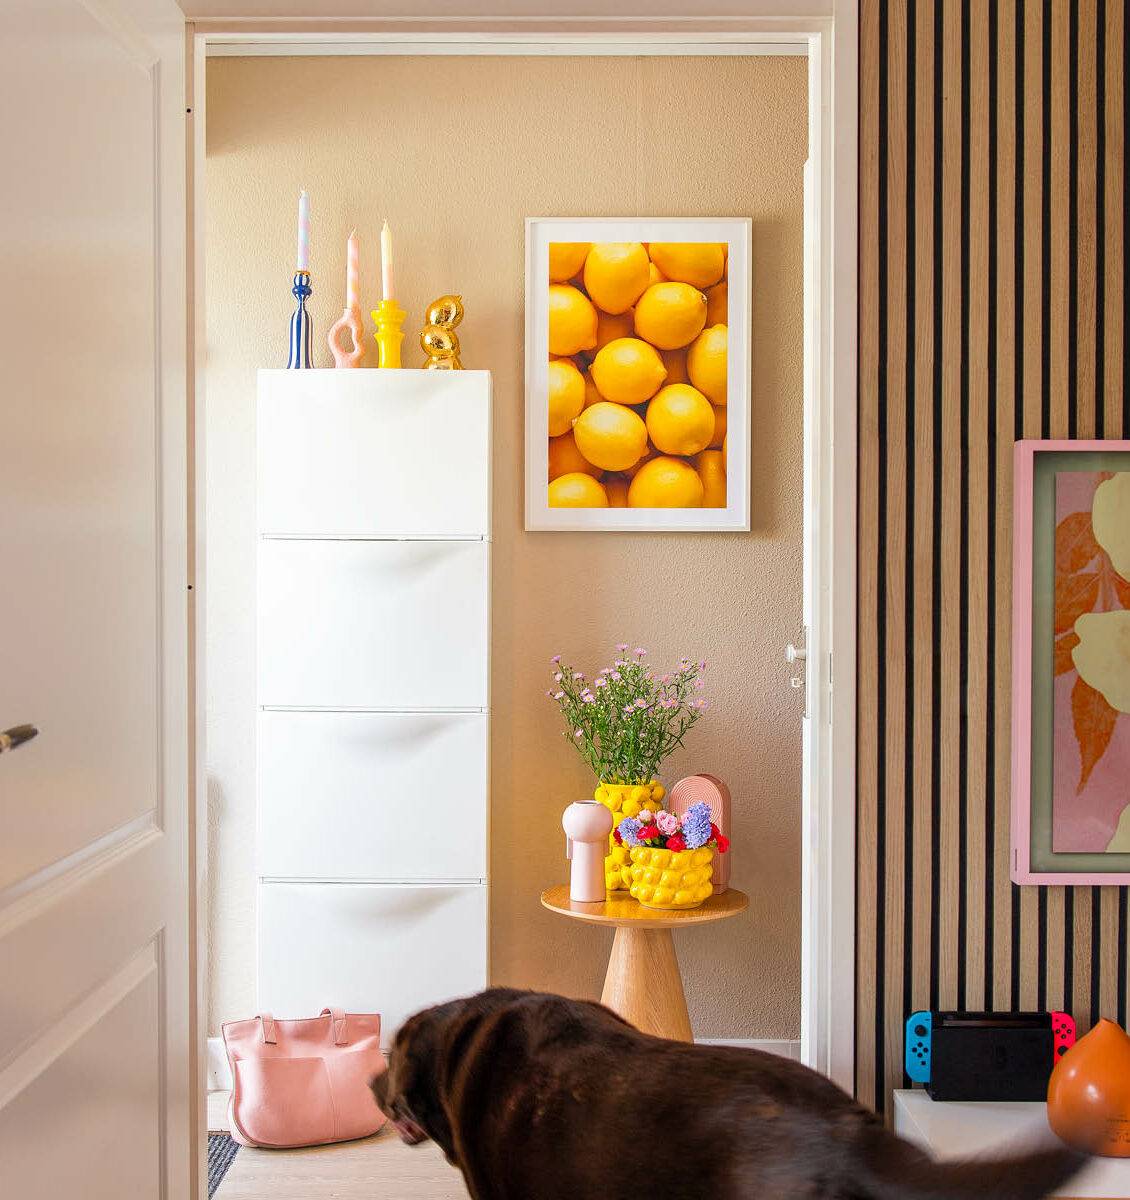 NL hal met hond en citroenen poster aan de wand